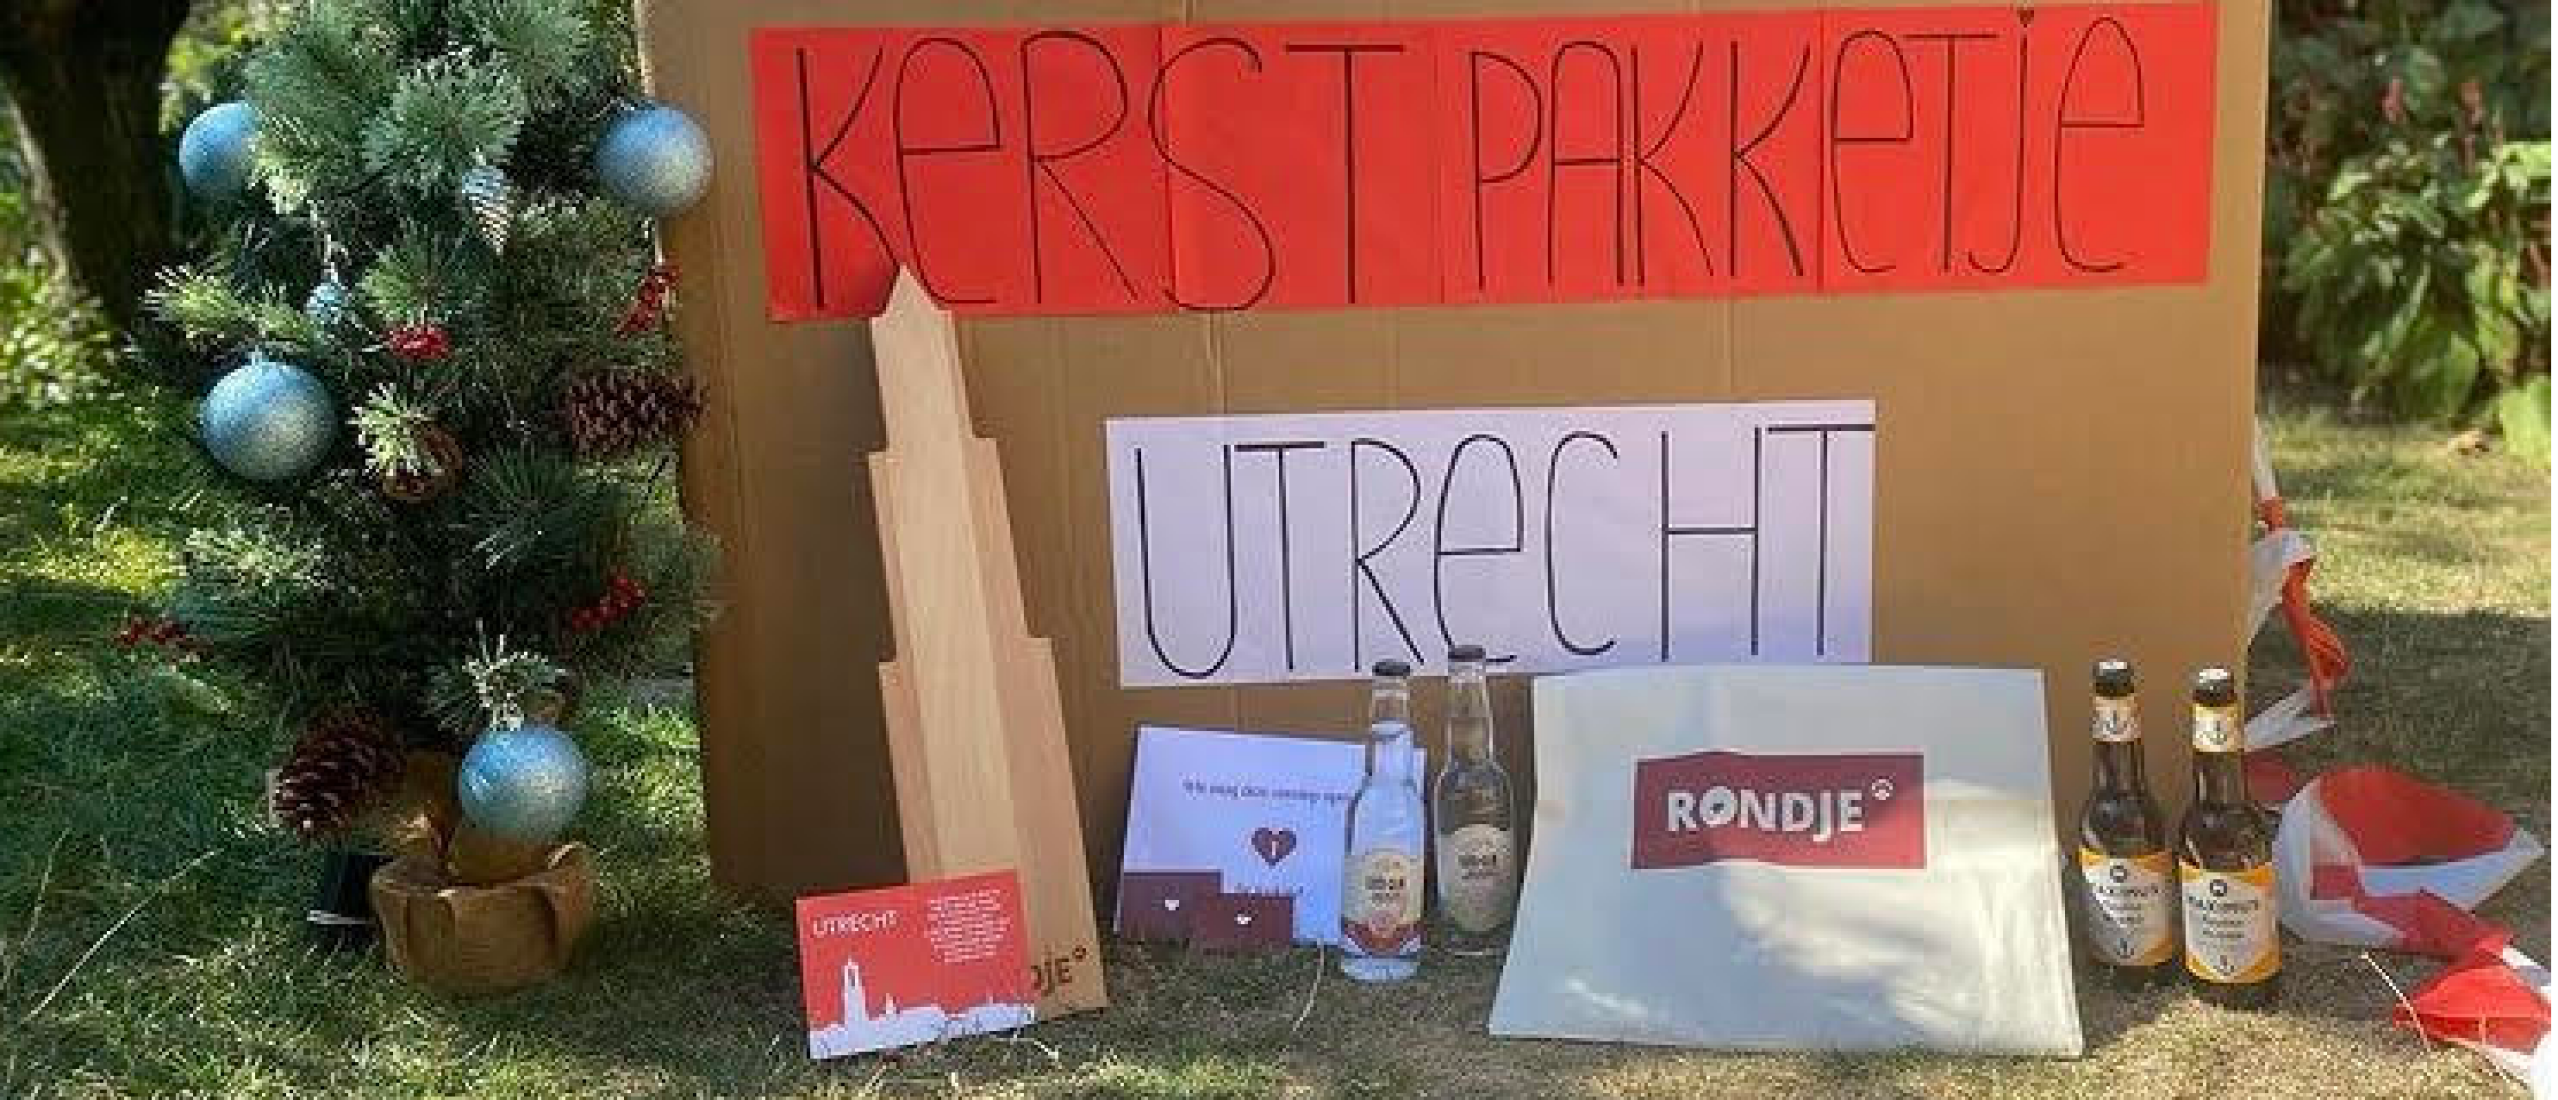 Kerstpakketje Utrecht: van Utrechtse ondernemers, voor Utrechtse werknemers